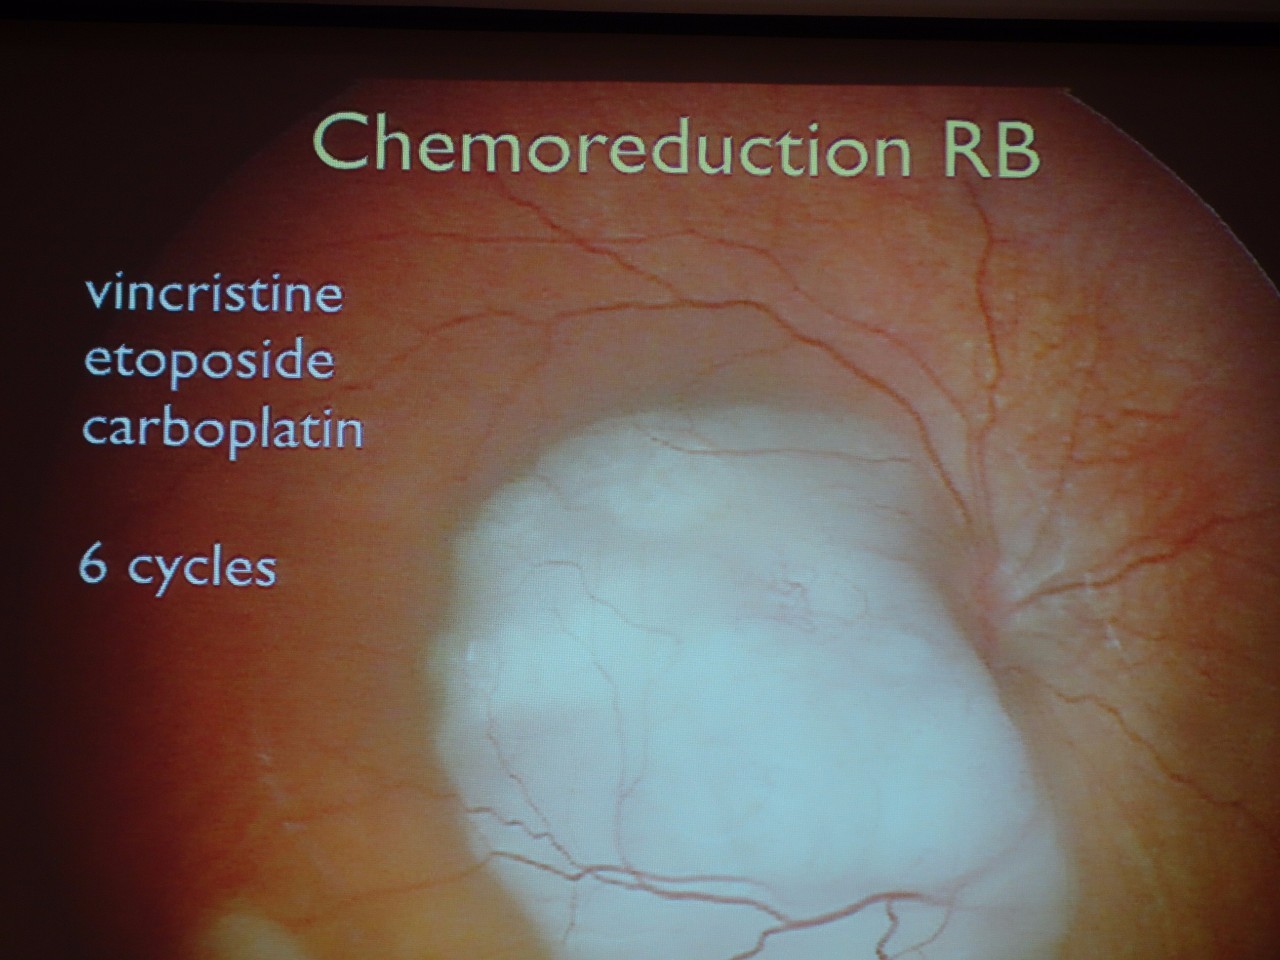 视网膜母细胞瘤影像图片